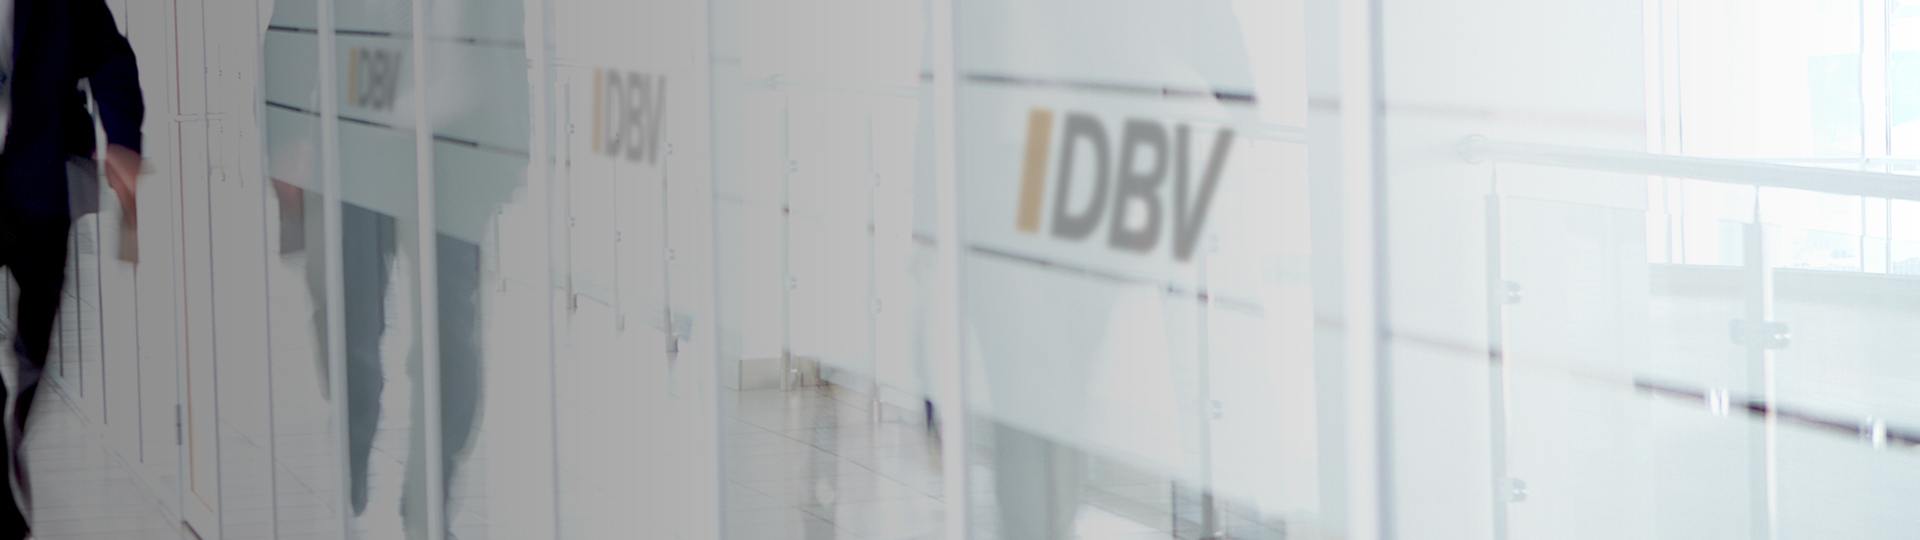 Unterschiedlicher Versicherungsbedarf | DBV Hannover Hornig & Knoch oHG 